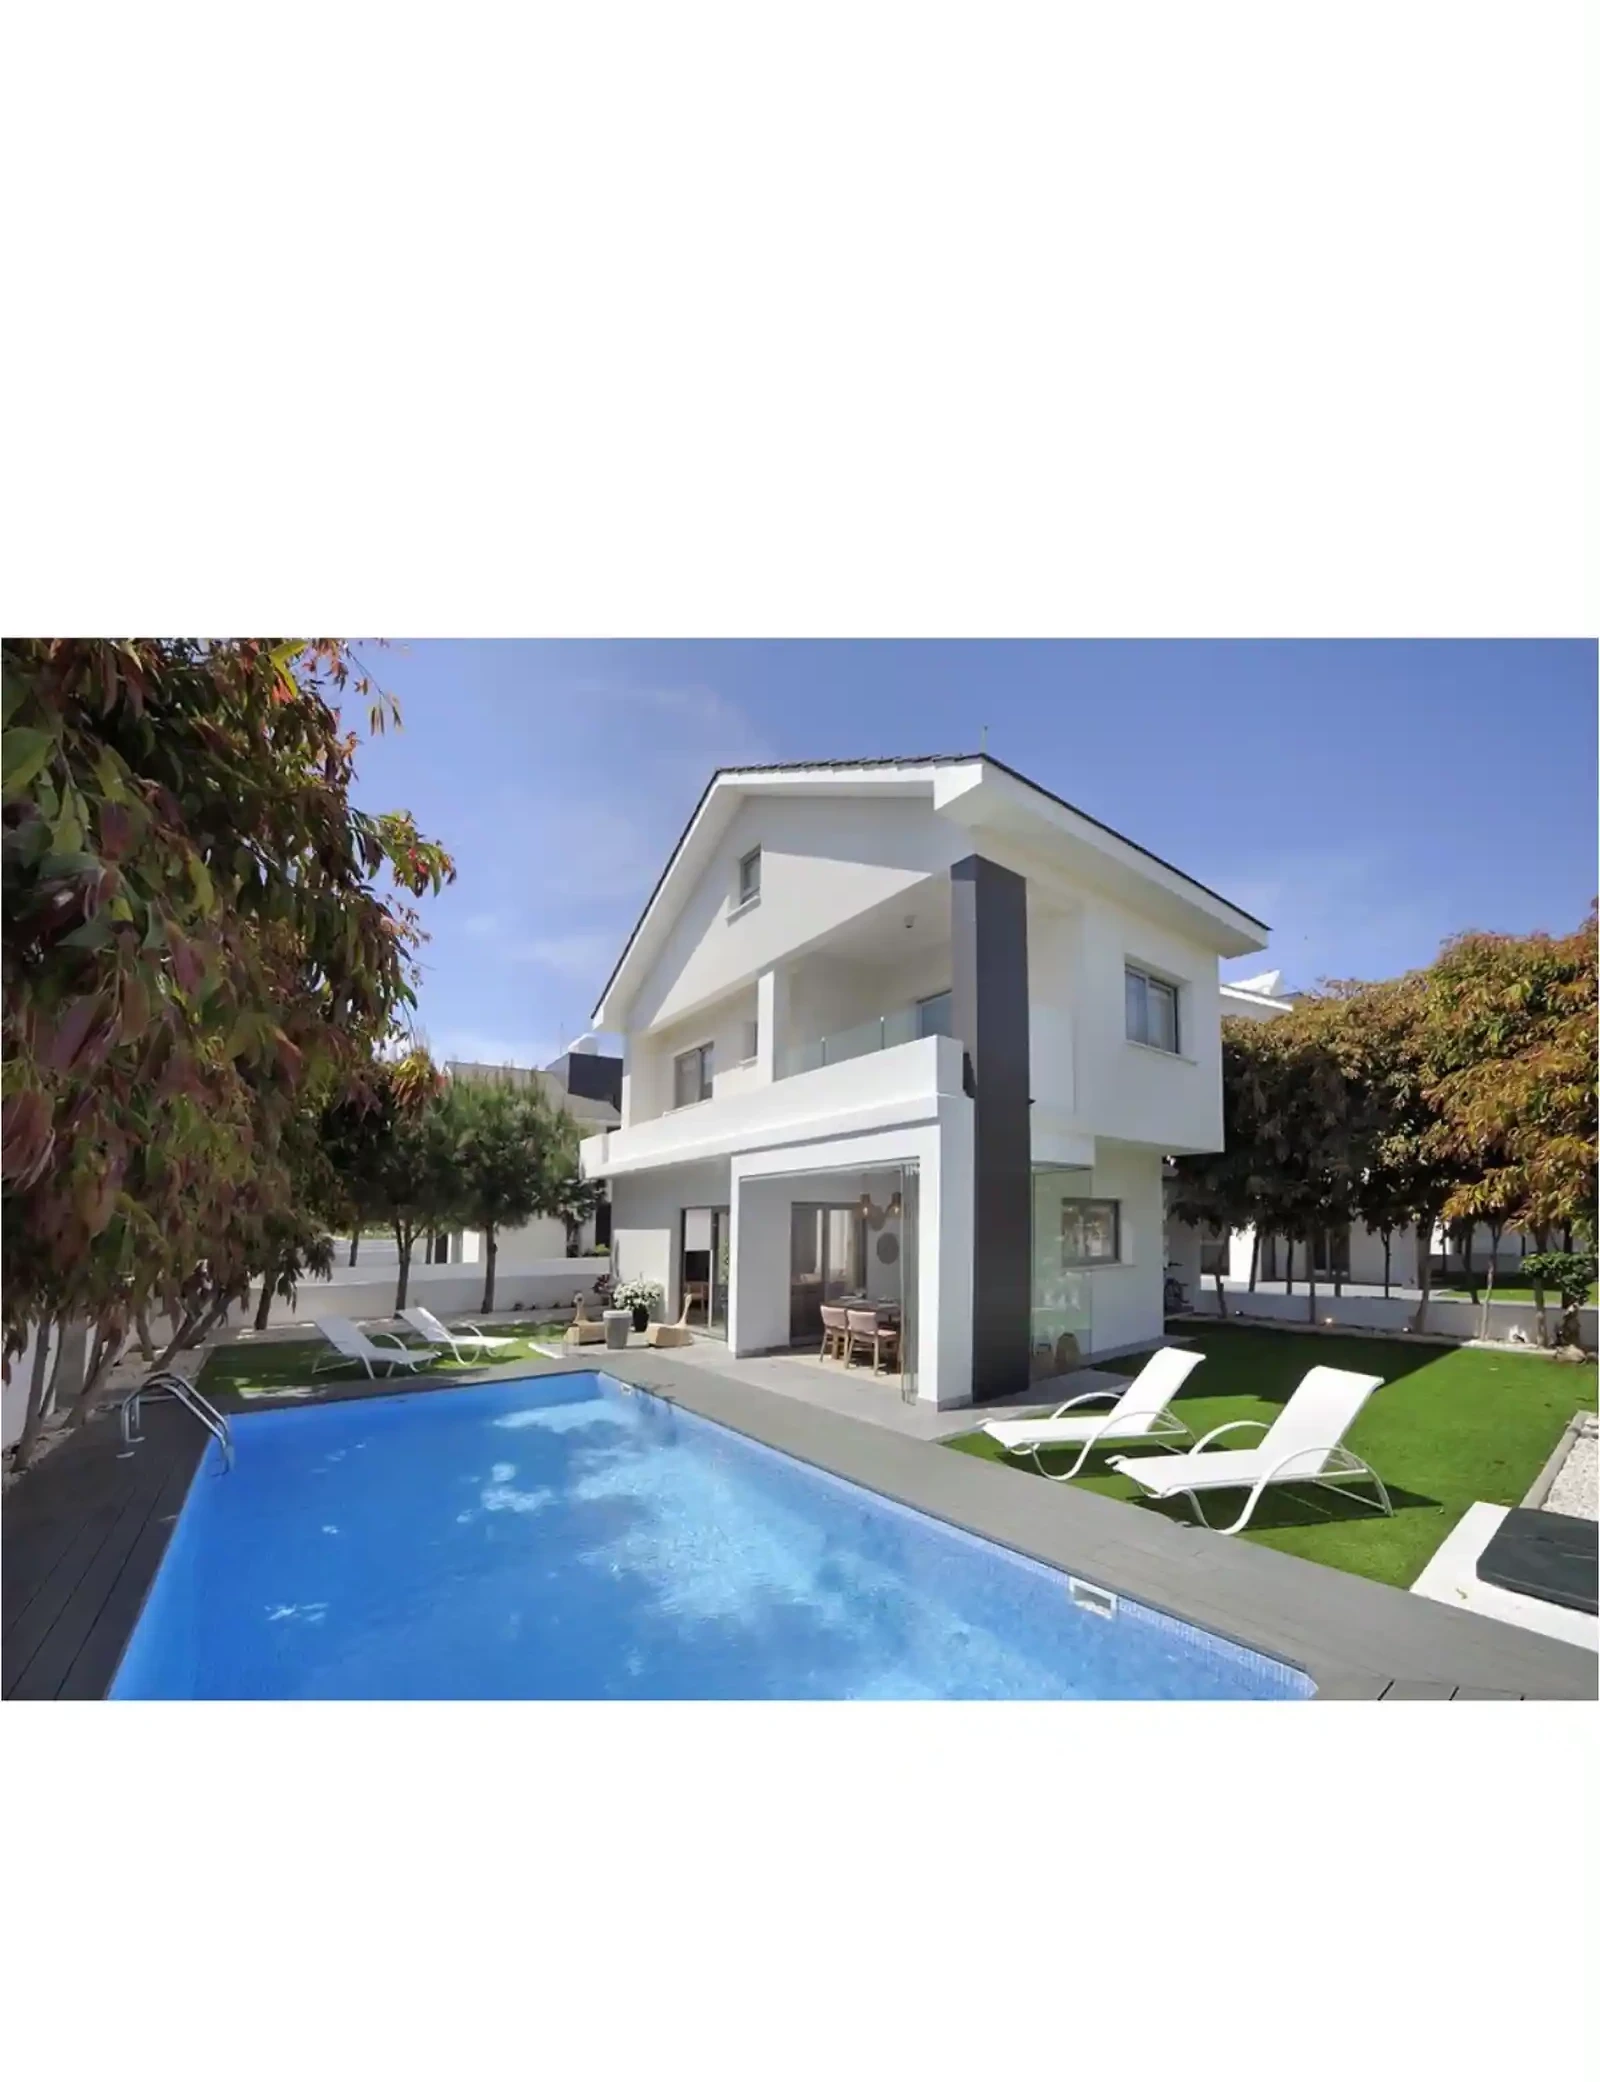 3-bedroom villa to rent €2.350, image 1